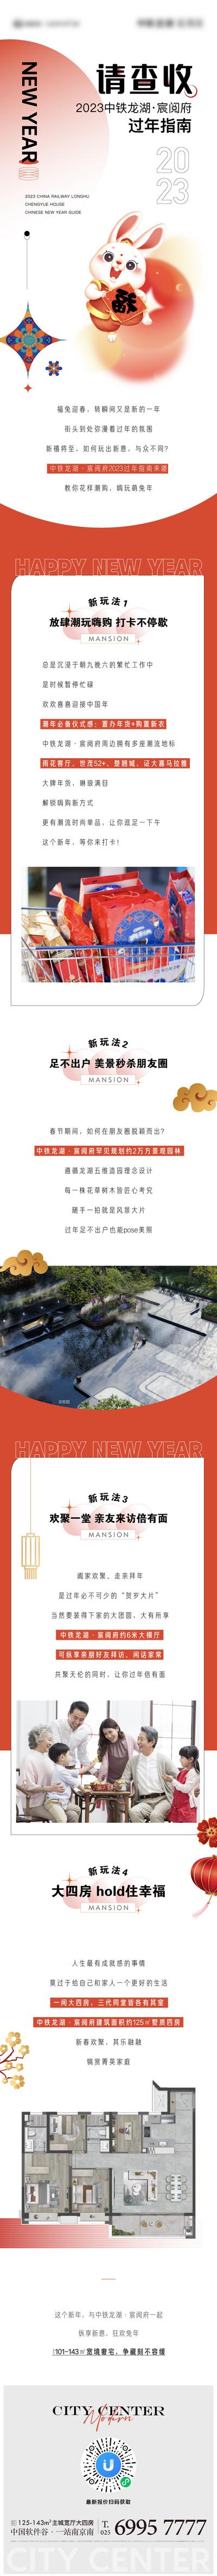 南门网 海报 长图 房地产 中国传统节日 新年 潮流 时尚 活动